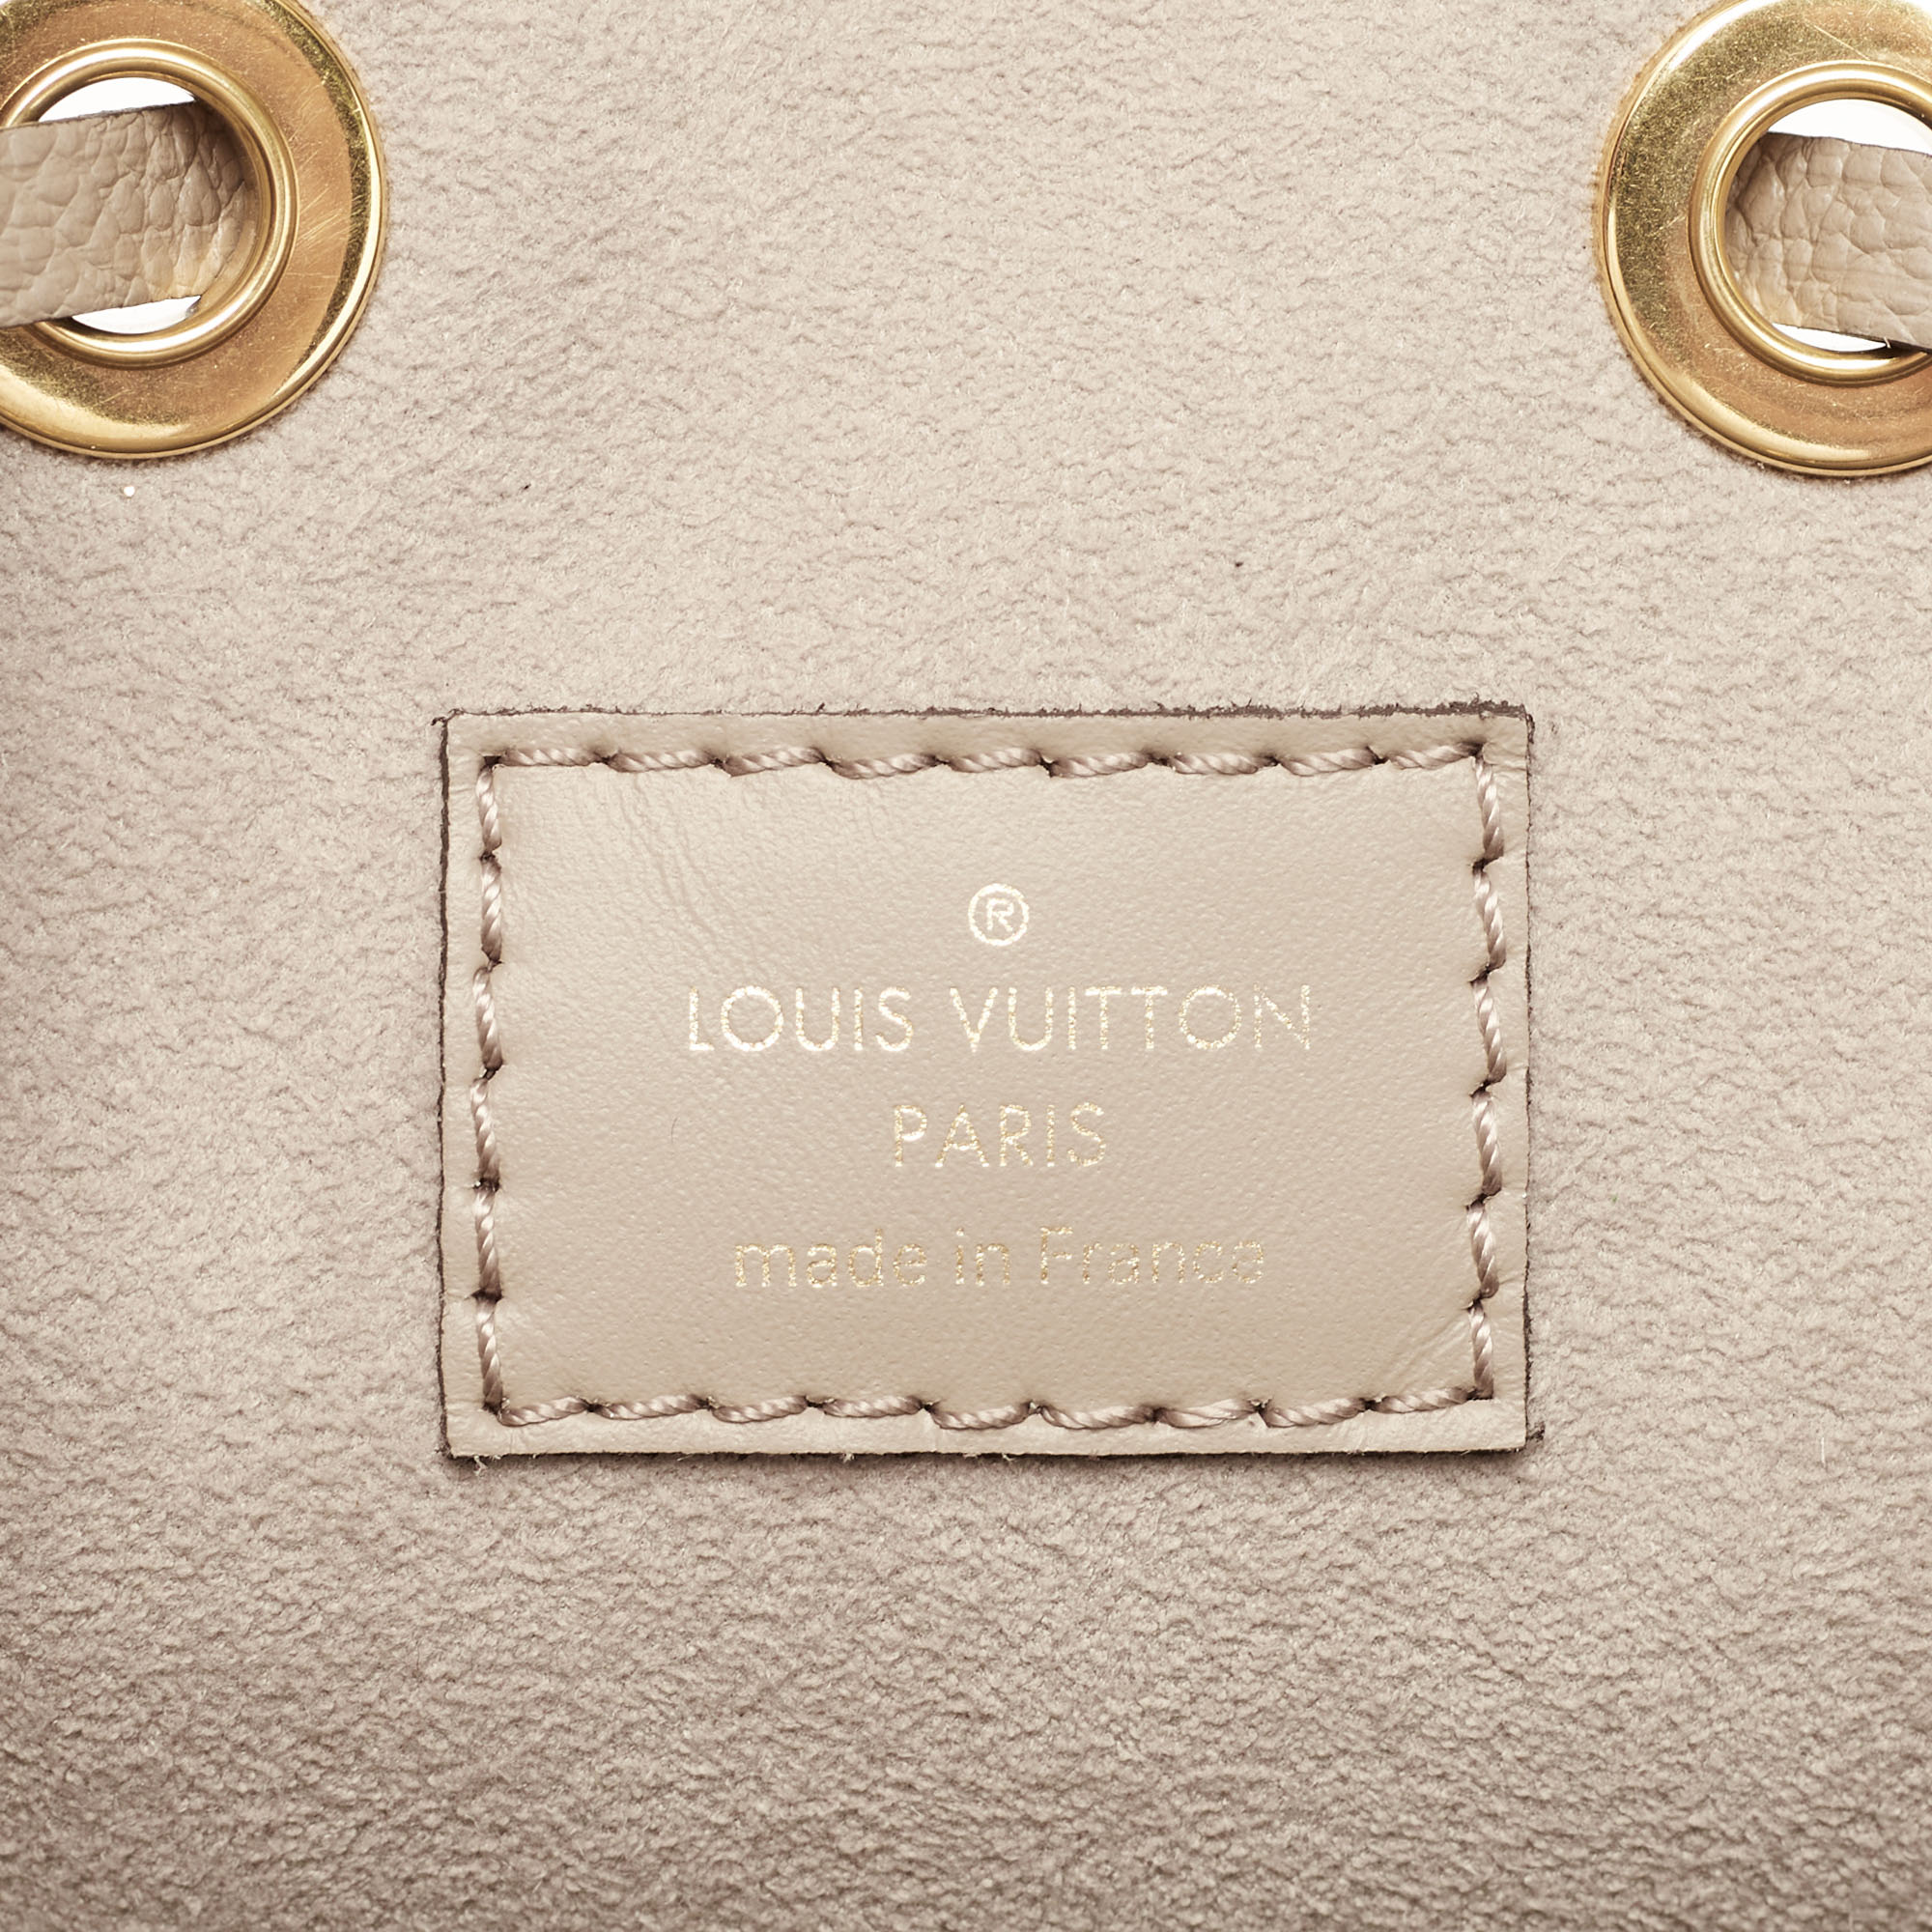 Shop Louis Vuitton NEONOE Néonoé Mm (M45256) by Ravie